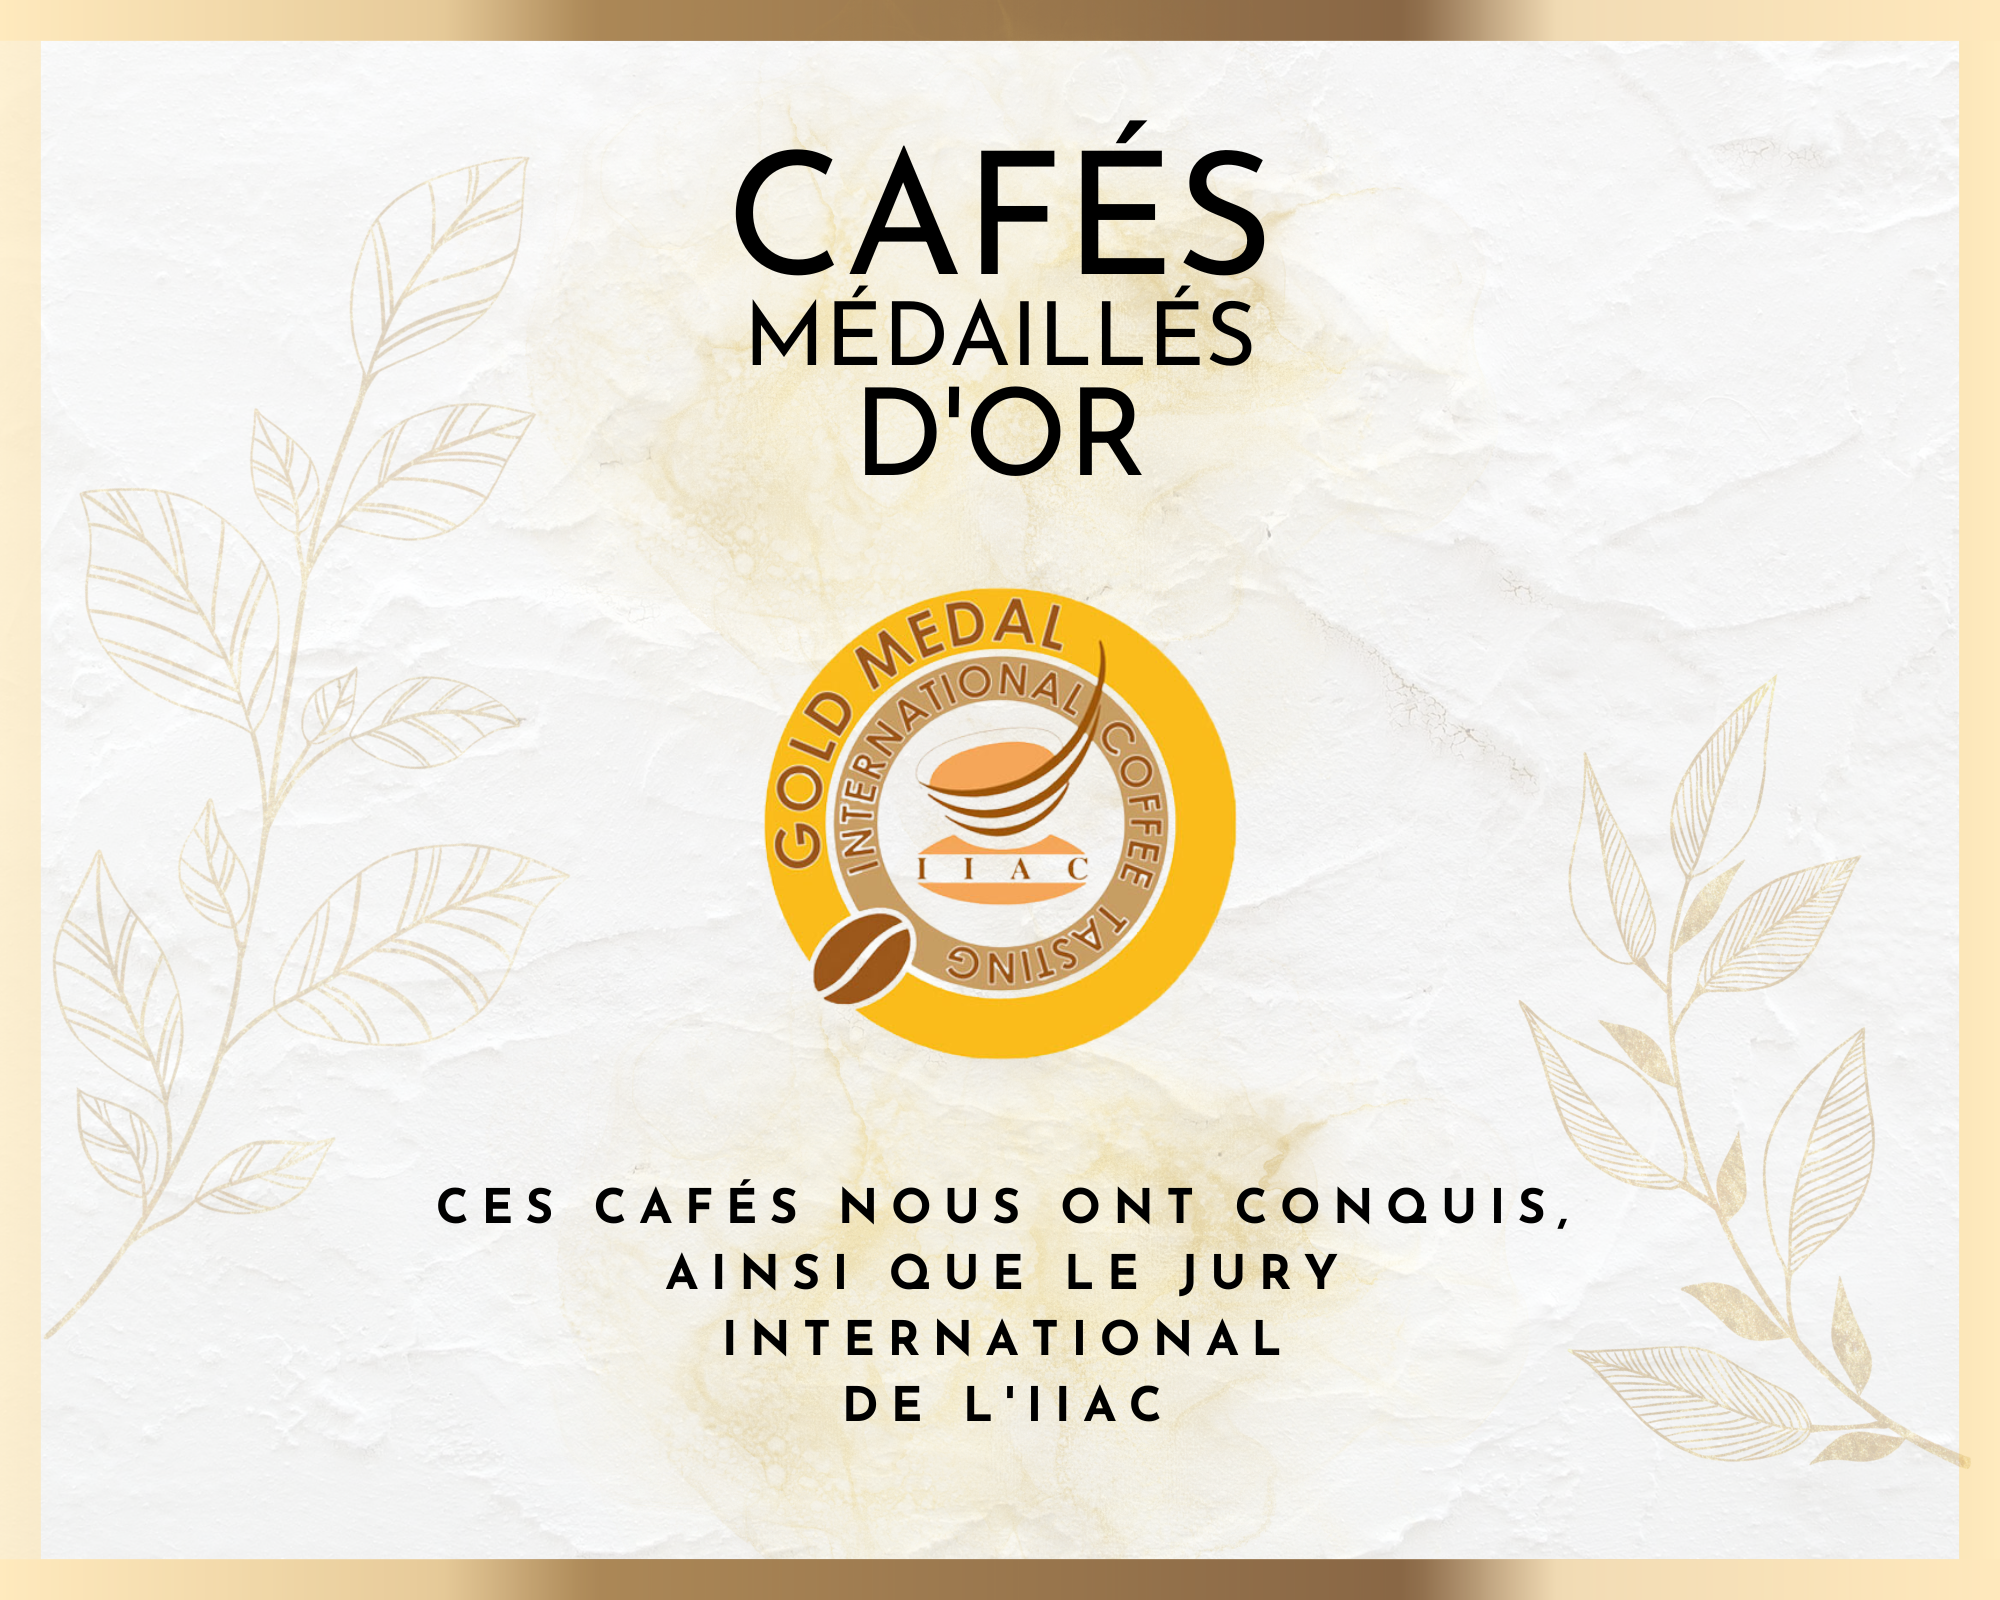 Cafés primés/médaillés